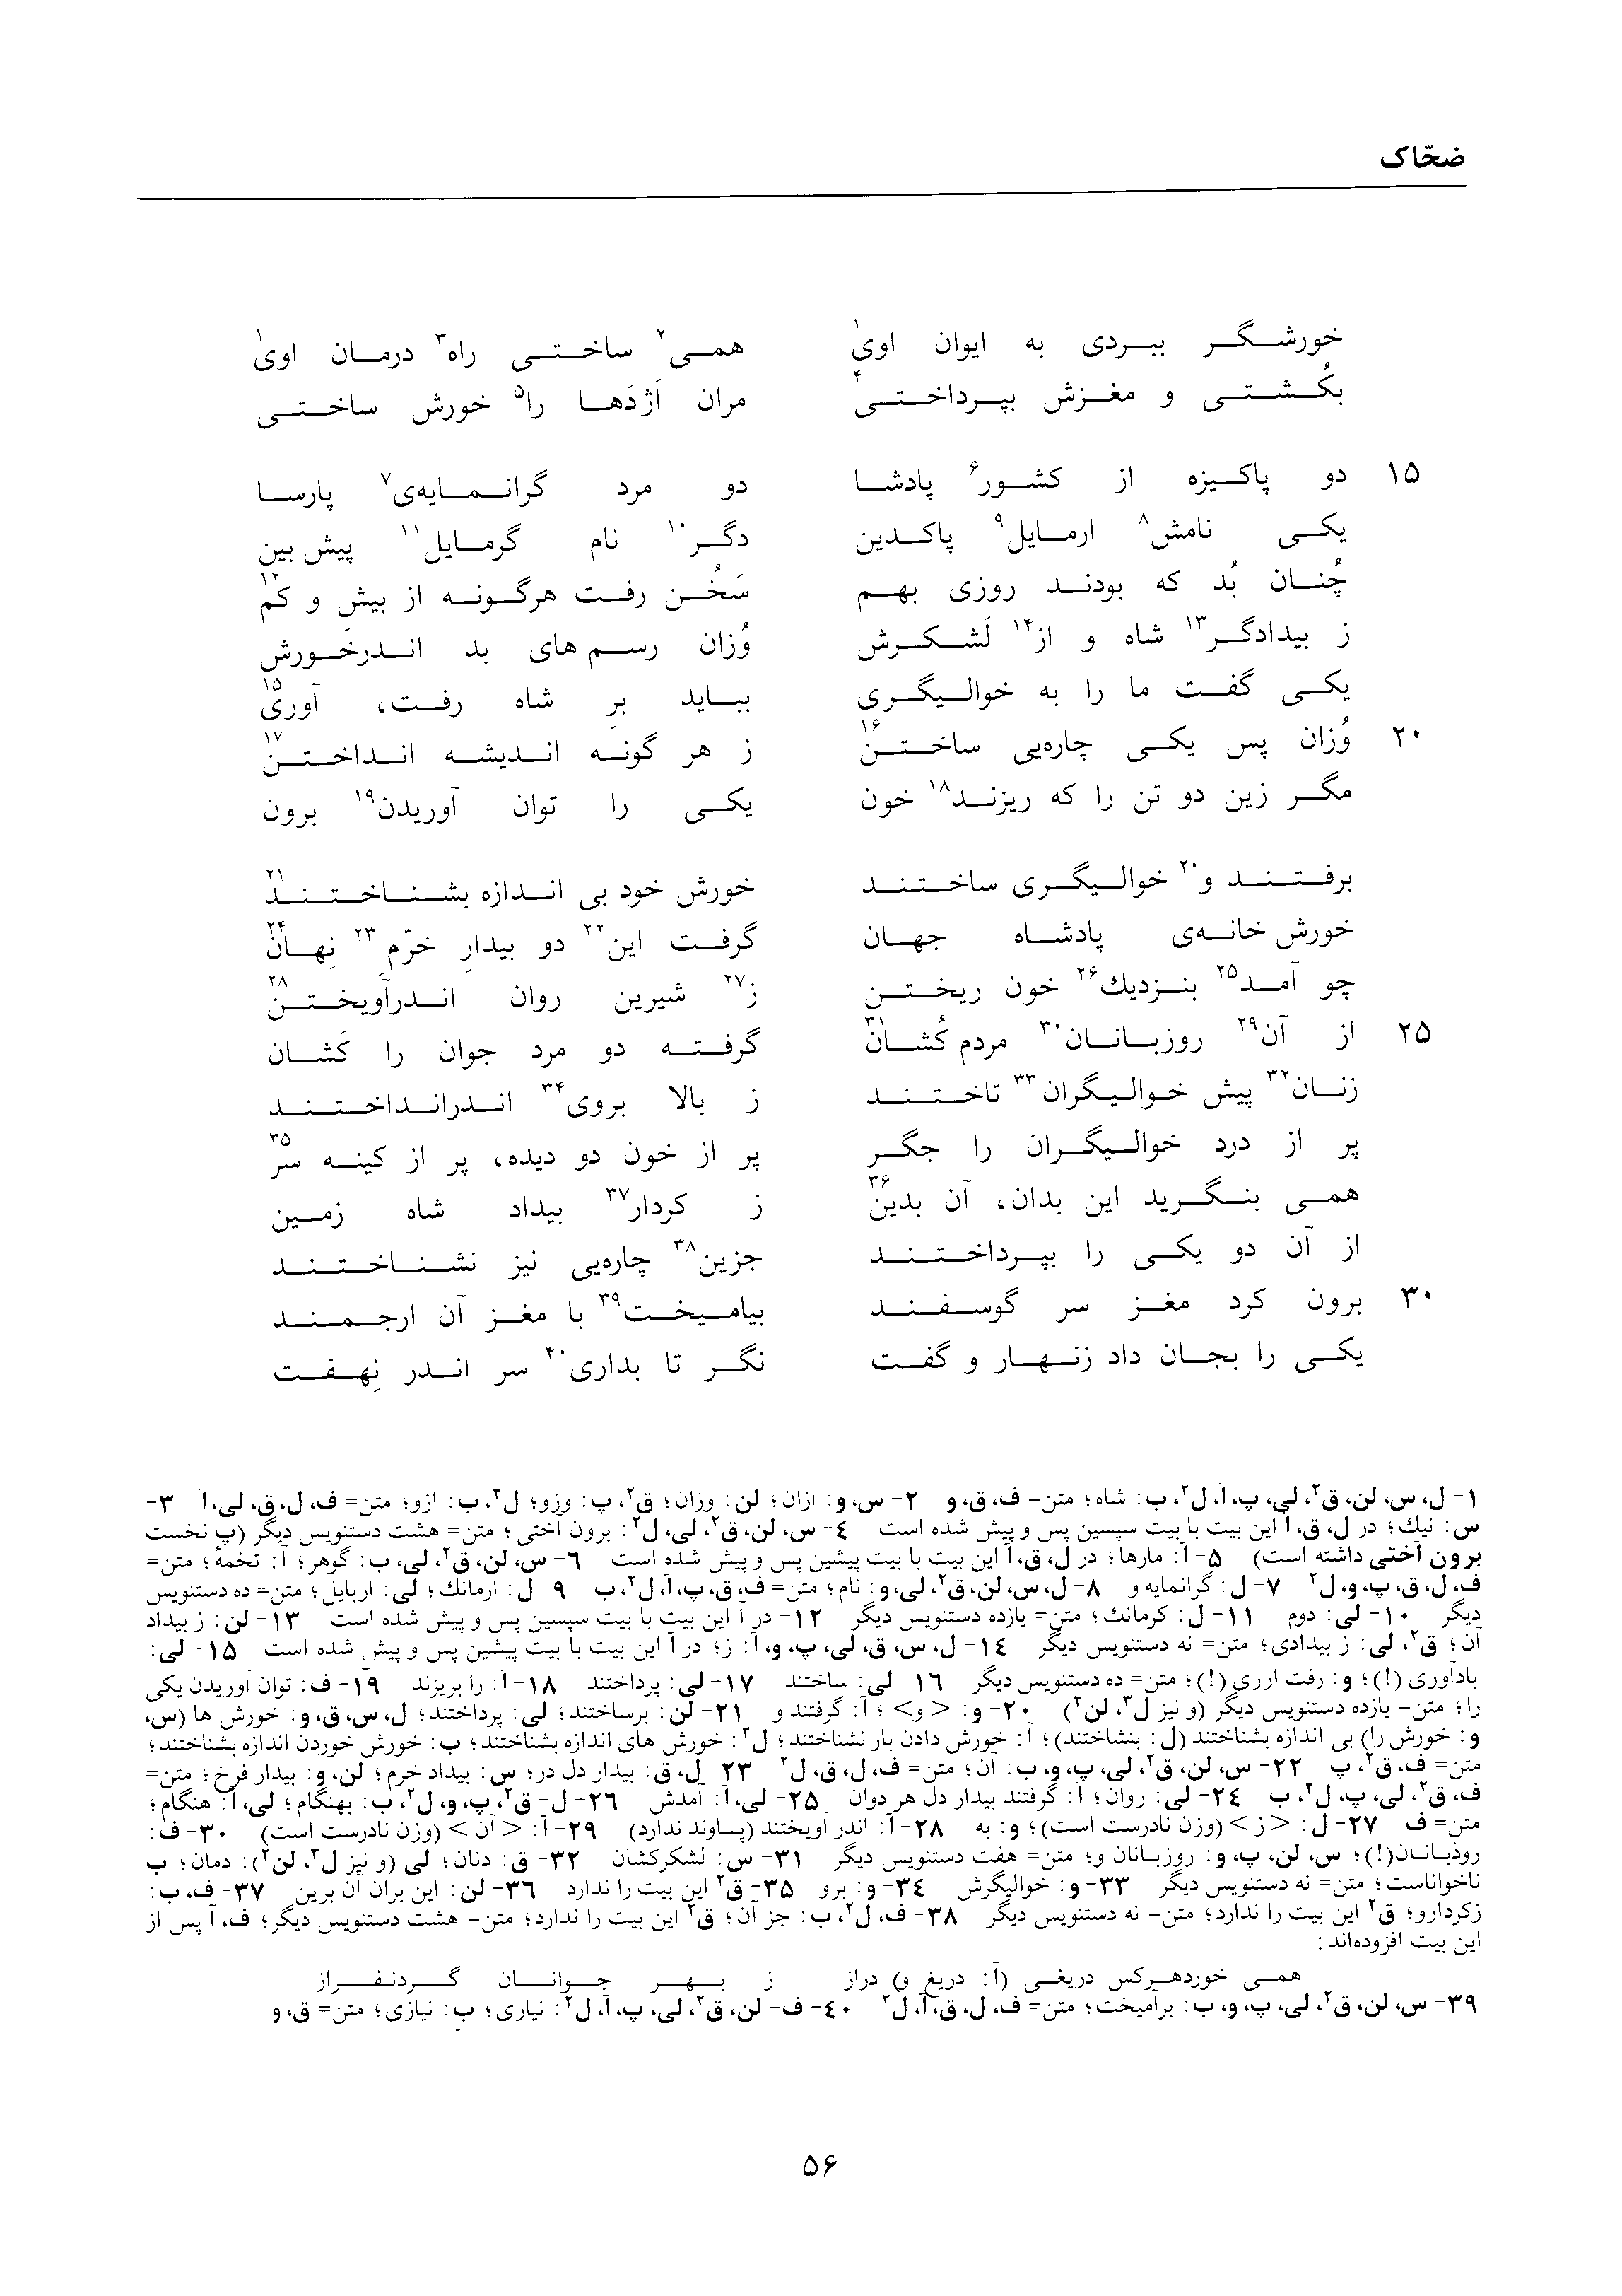 vol. 1, p. 56